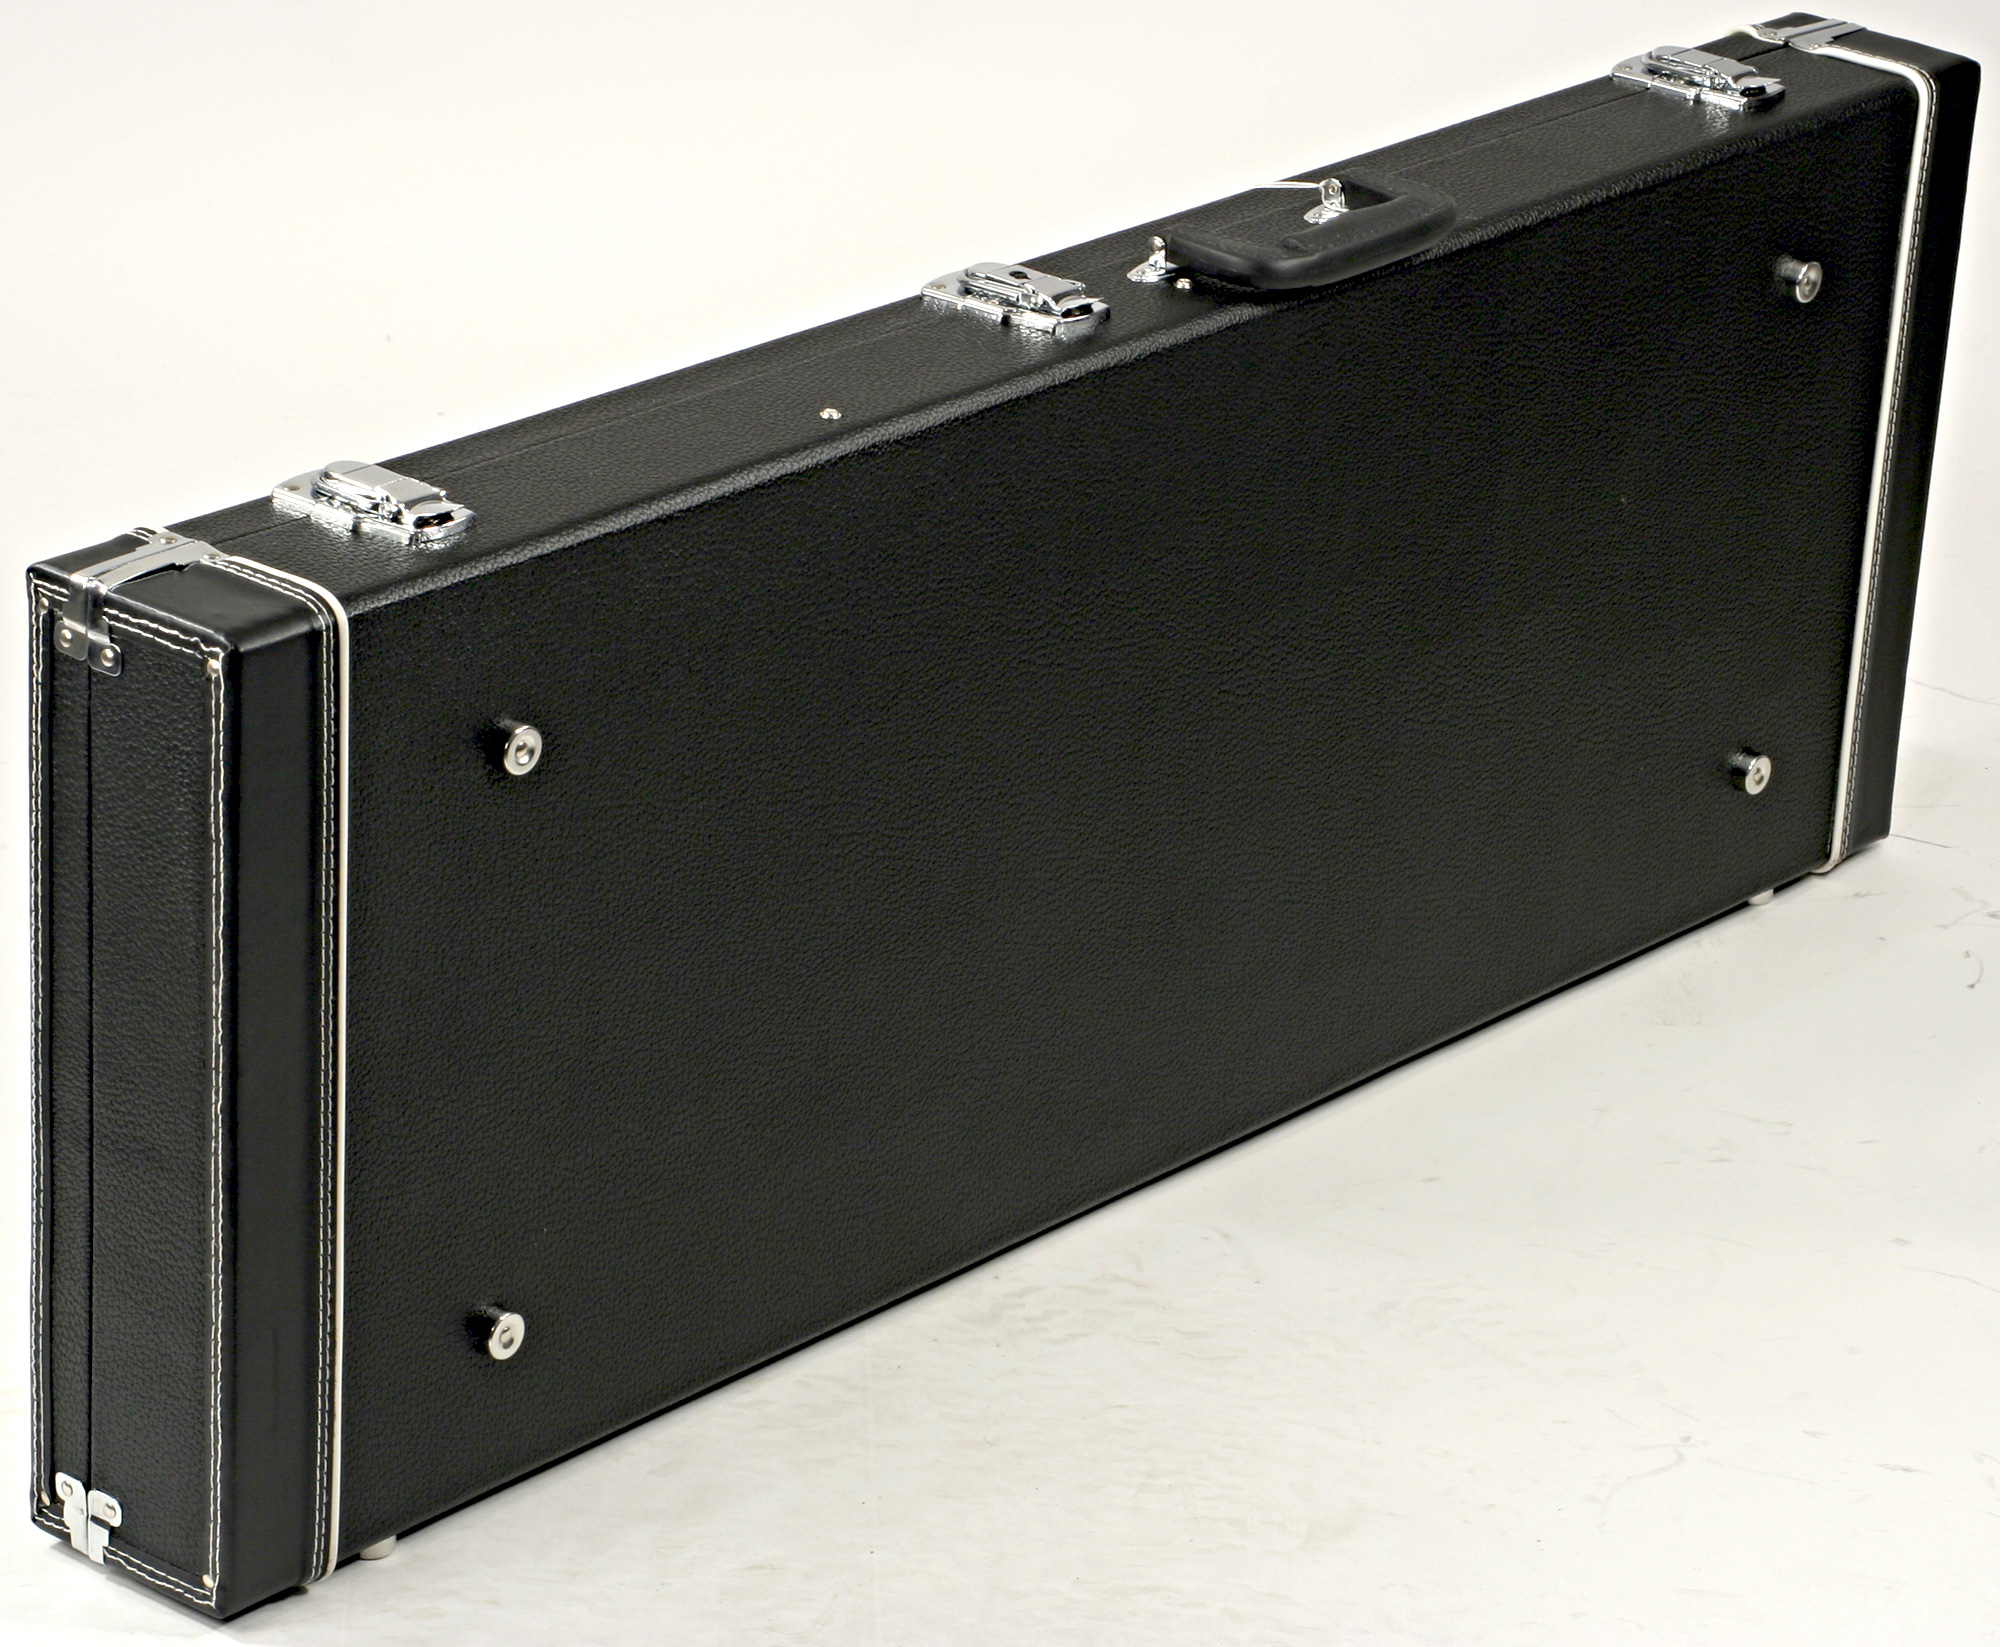 X-tone 1501 Standard Electrique Strat/tele Rectangulaire Black - Electric guitar case - Variation 1